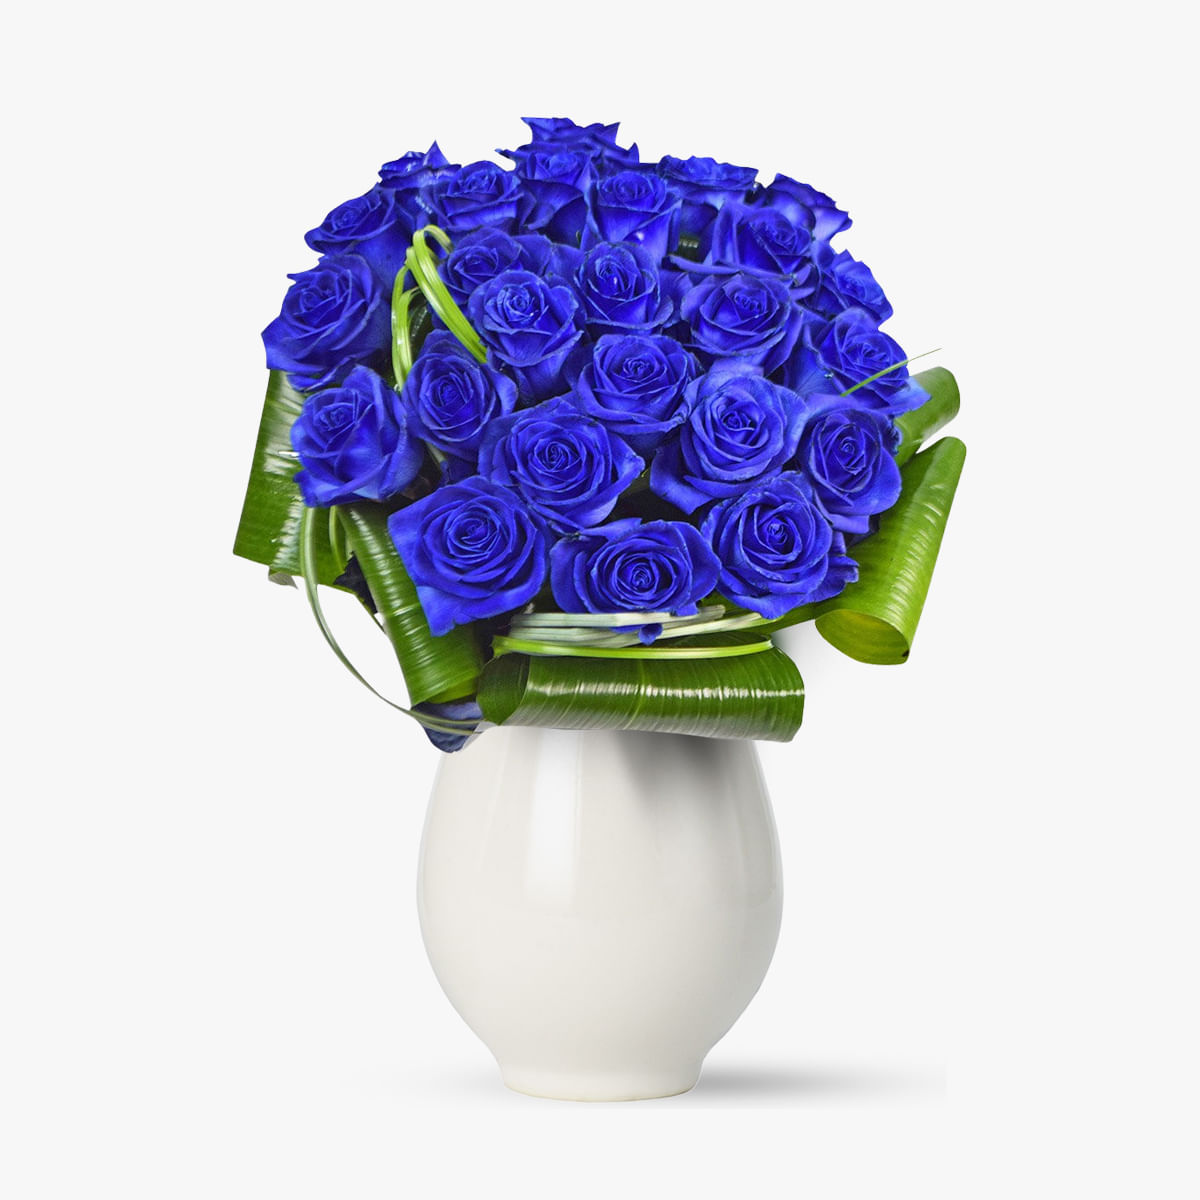 Buchet de 25 trandafiri albastri Floria imagine 2022